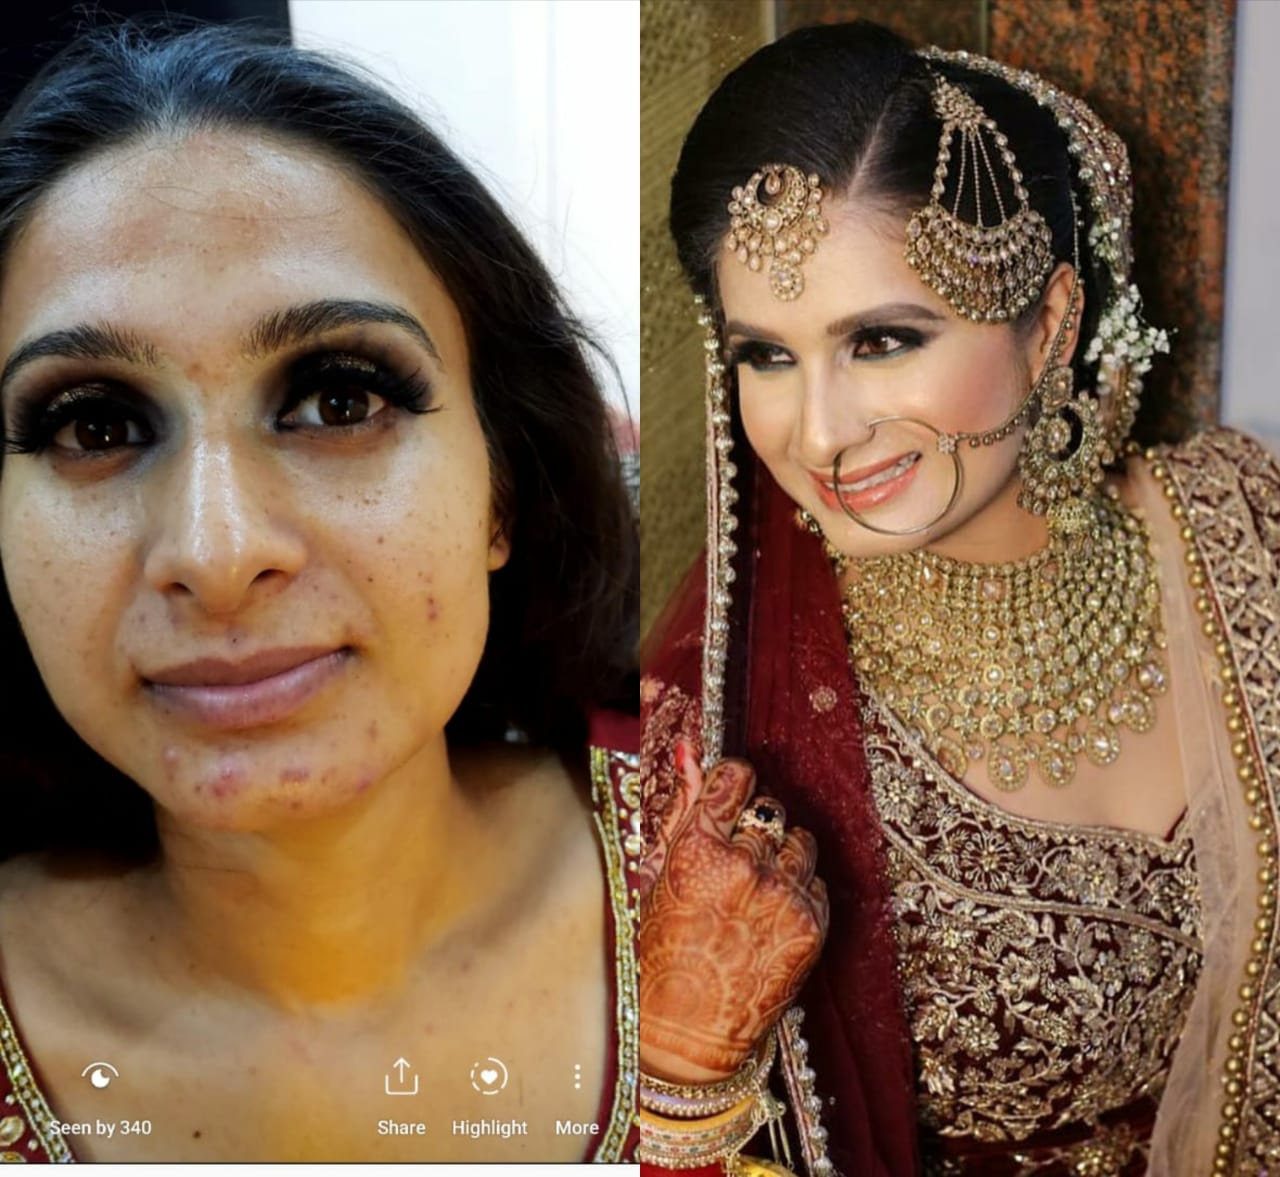 sheena-pahwa-makeup-artist-jalandhar